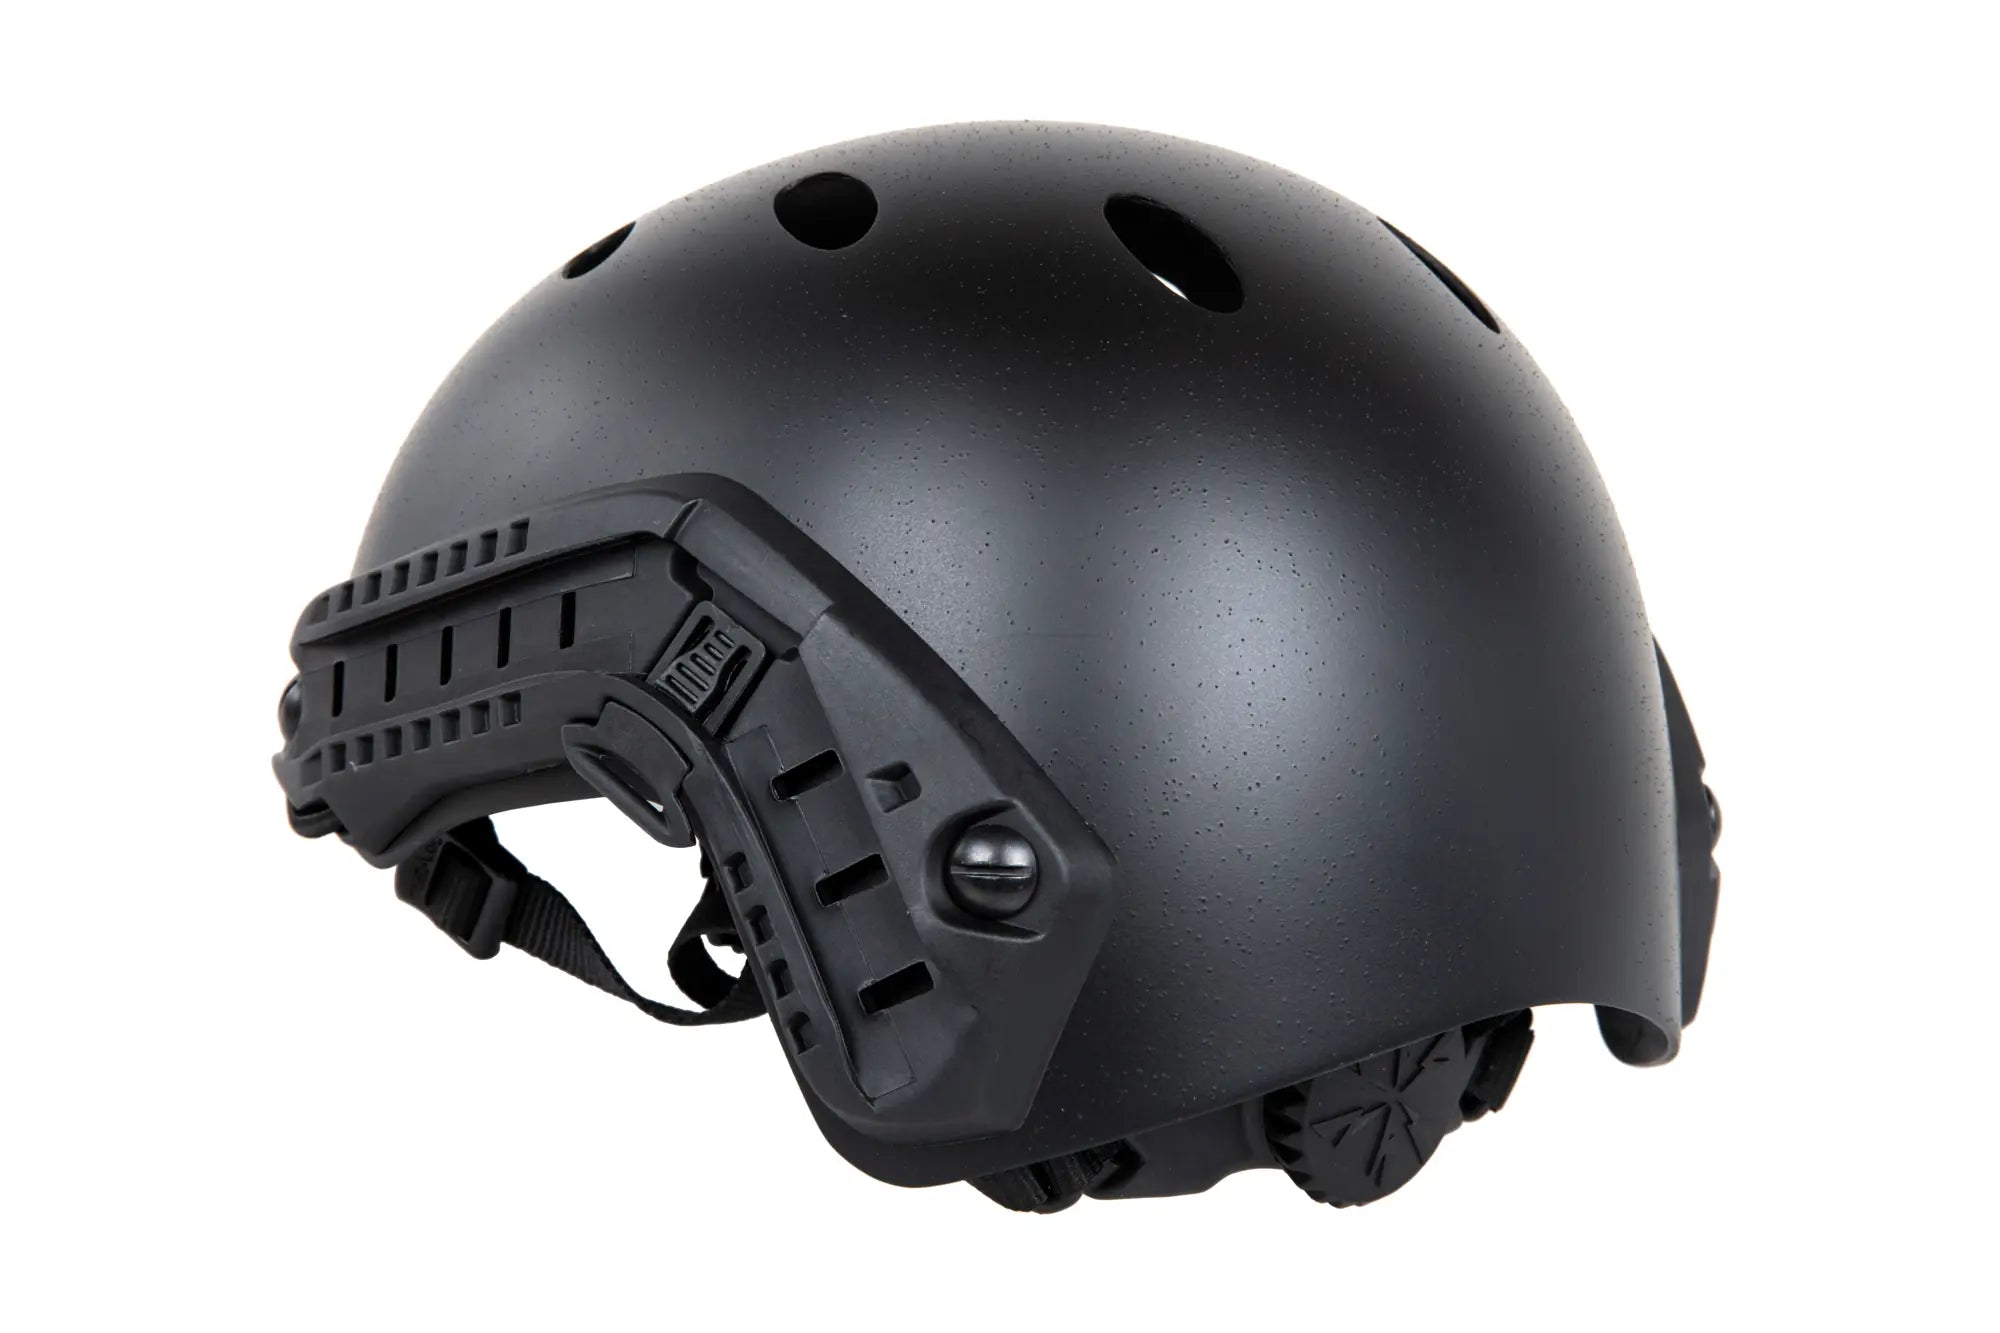 FMA FAST PJ helmet replica TB1453 (M/L) Black-5